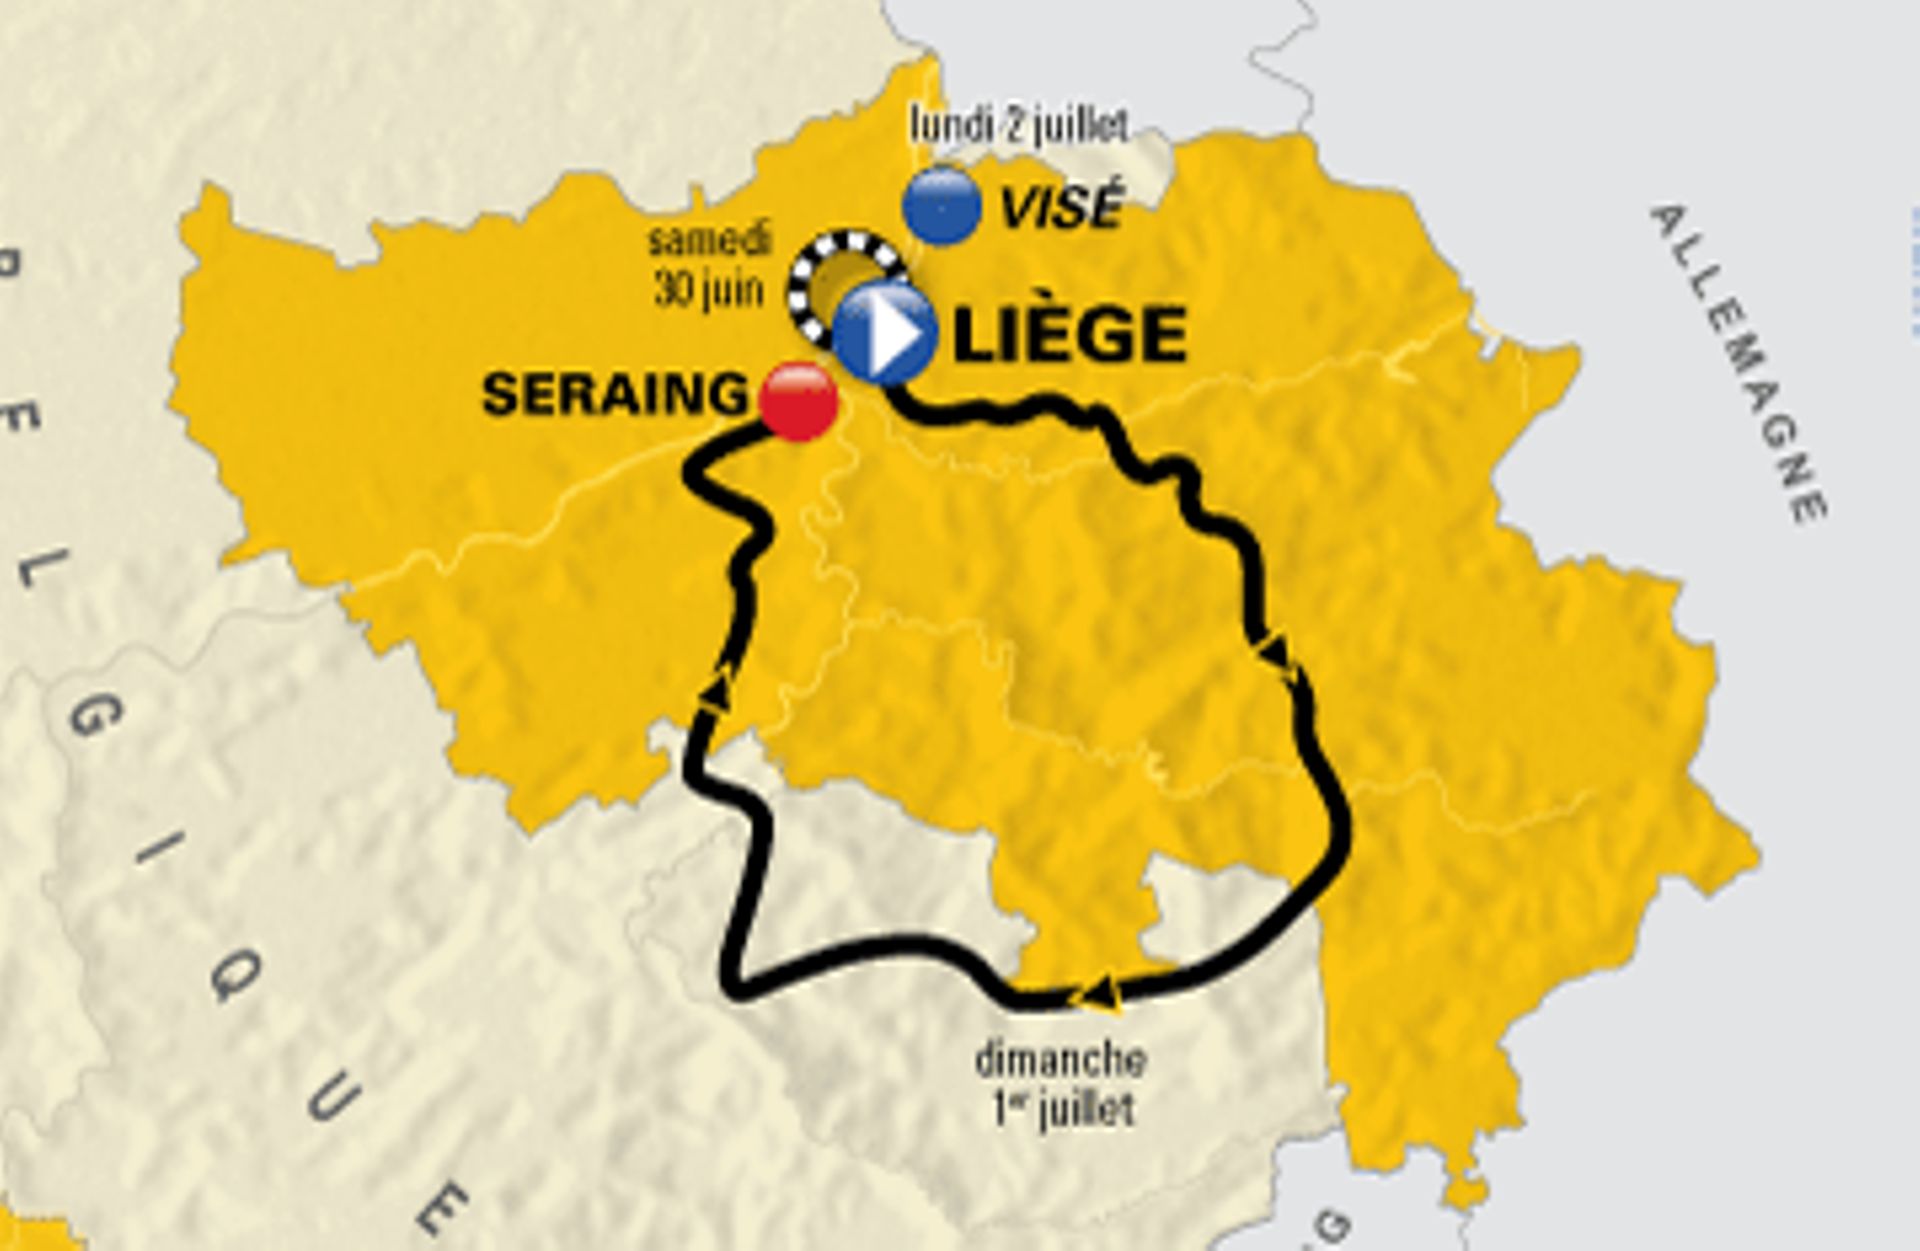 Tour de France à Liège: le plan de mobilité a été présenté 